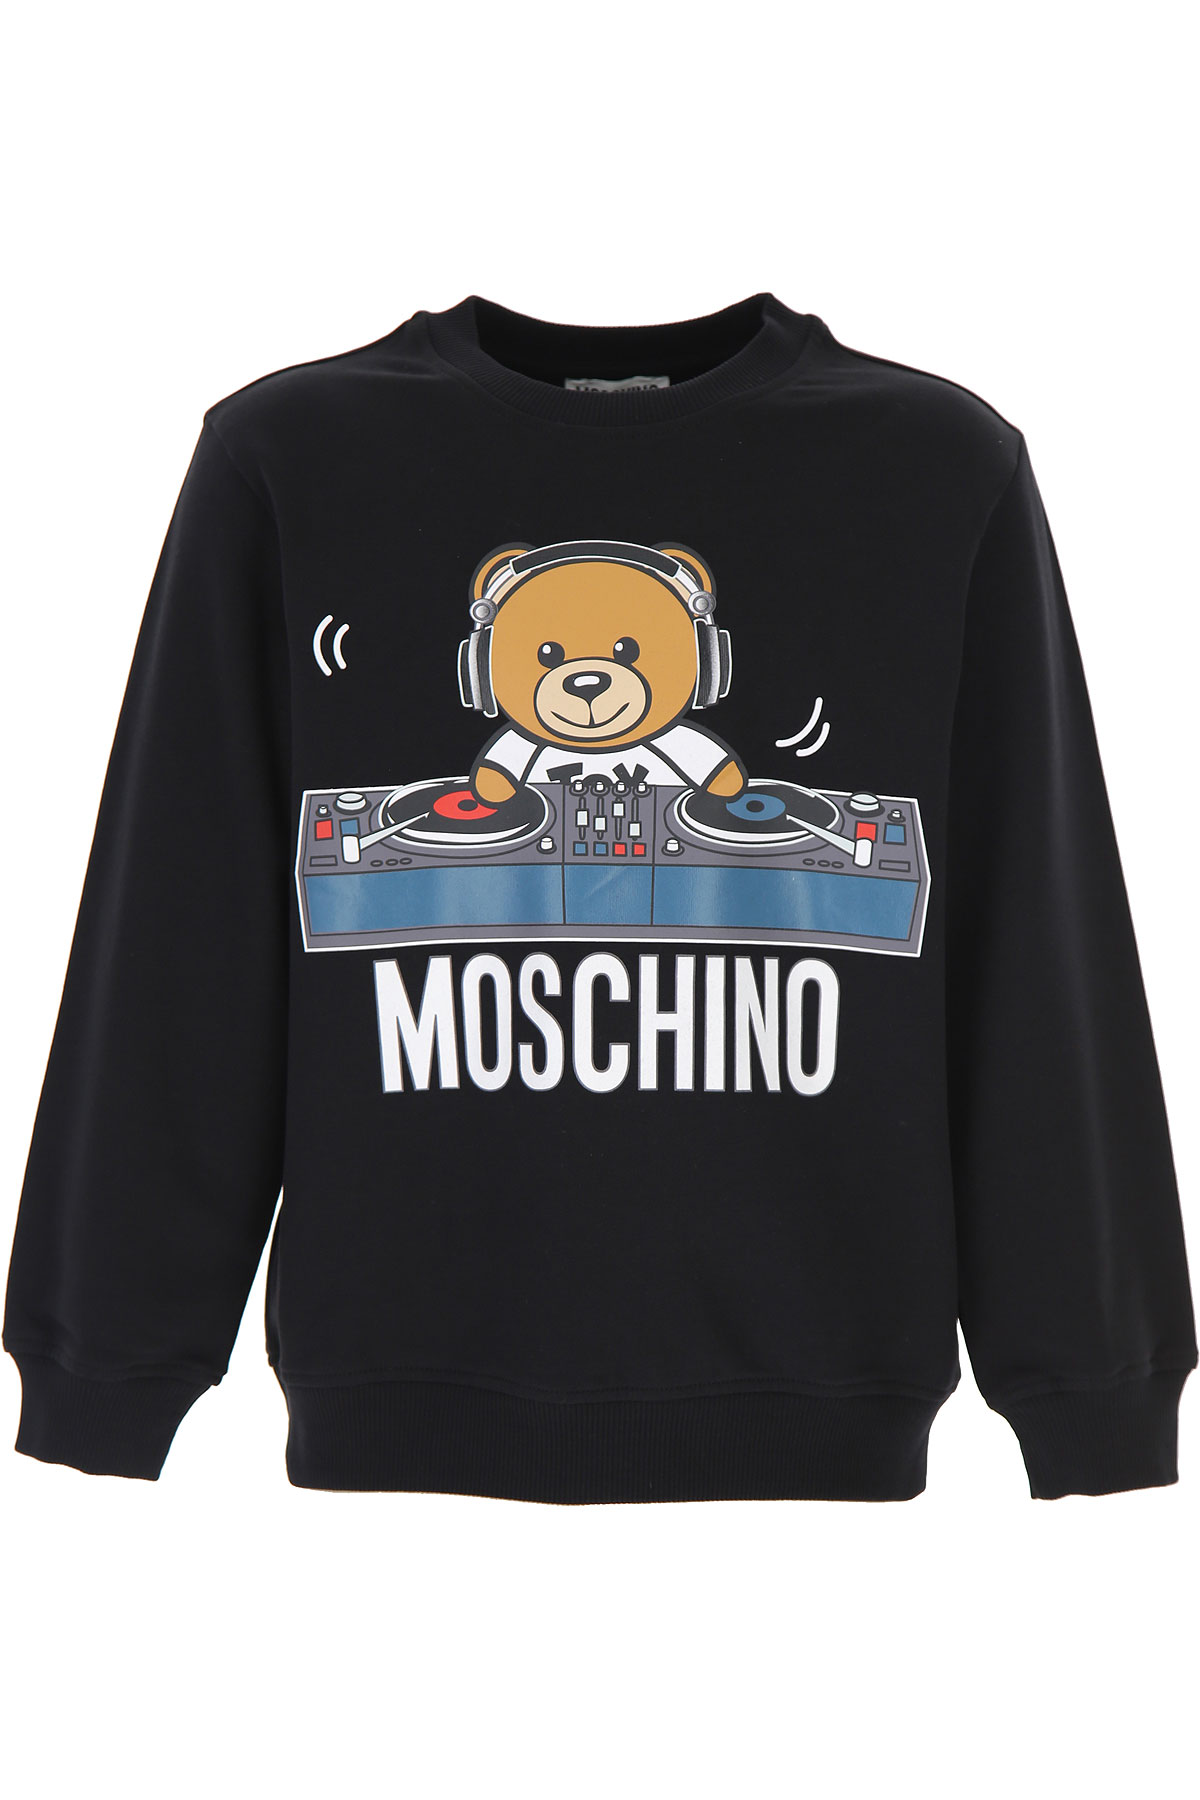 Moschino Kinder Sweatshirt & Kapuzenpullover für Jungen Günstig im Sale, Schwarz, Baumwolle, 2017, 10Y 12Y 6Y 8Y